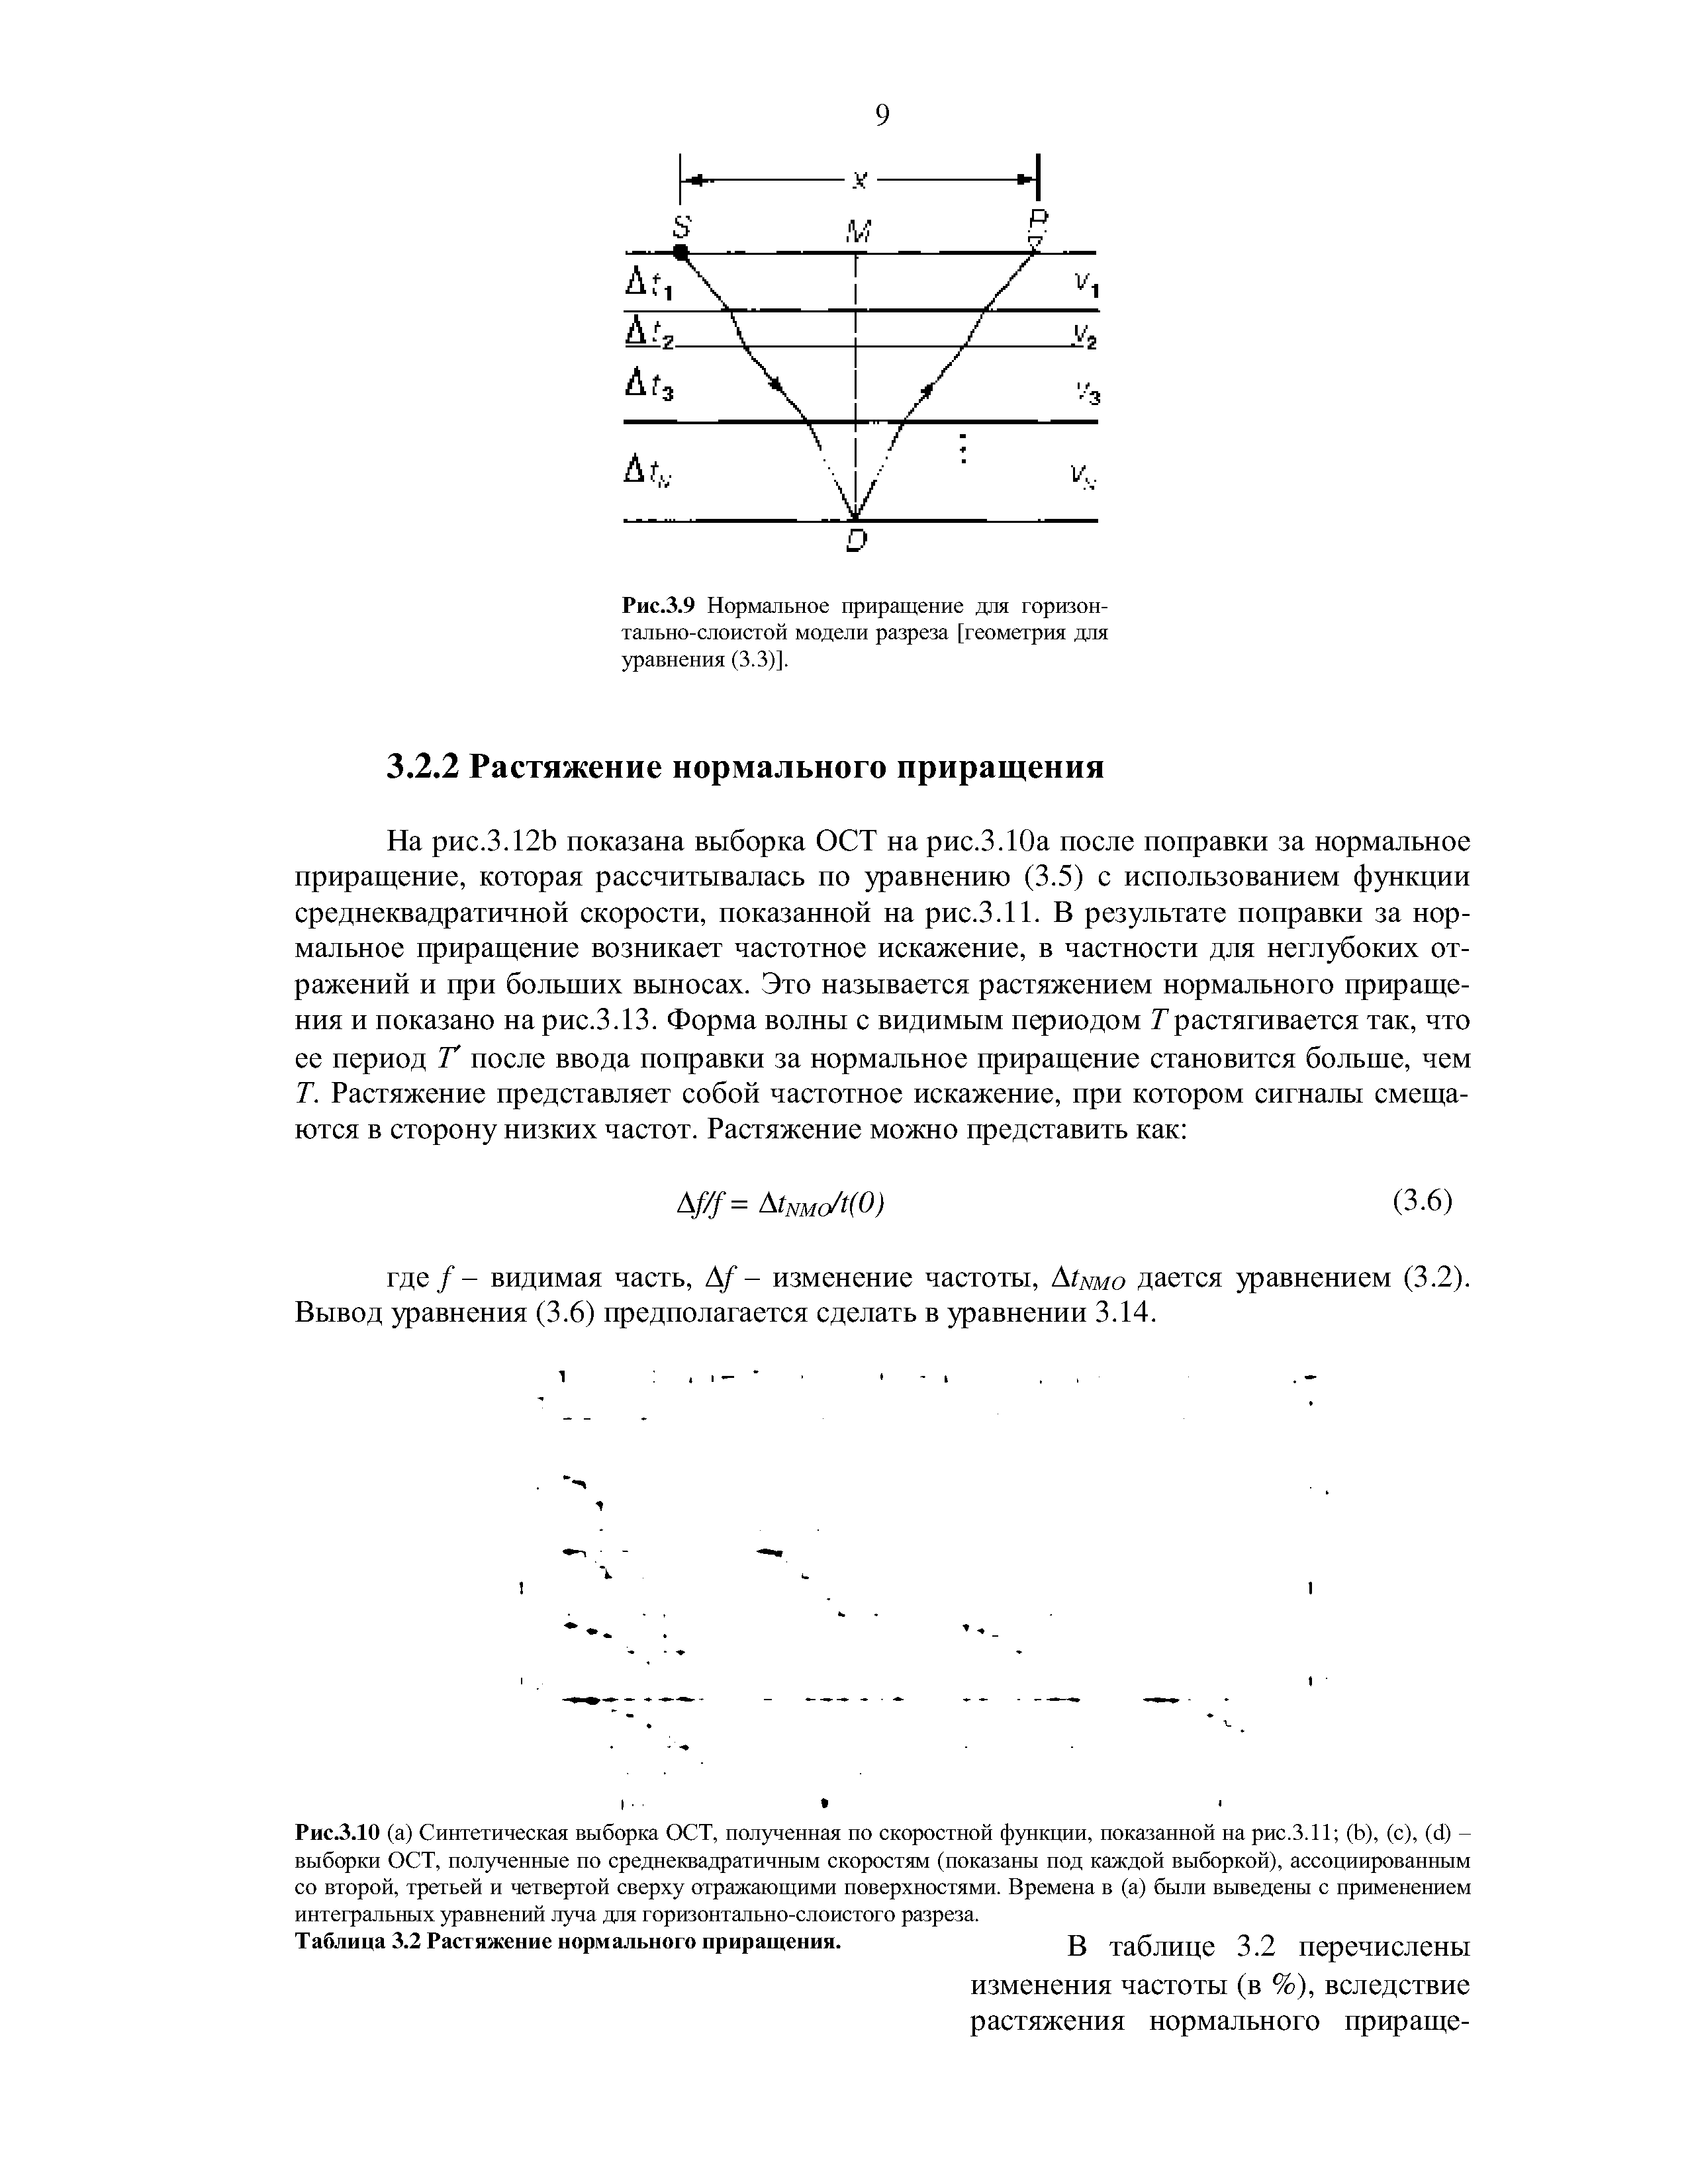 Рис.3.9 Нормальное приращение для горизонтально-слоистой модели разреза [геометрия для уравнения (3.3)].
